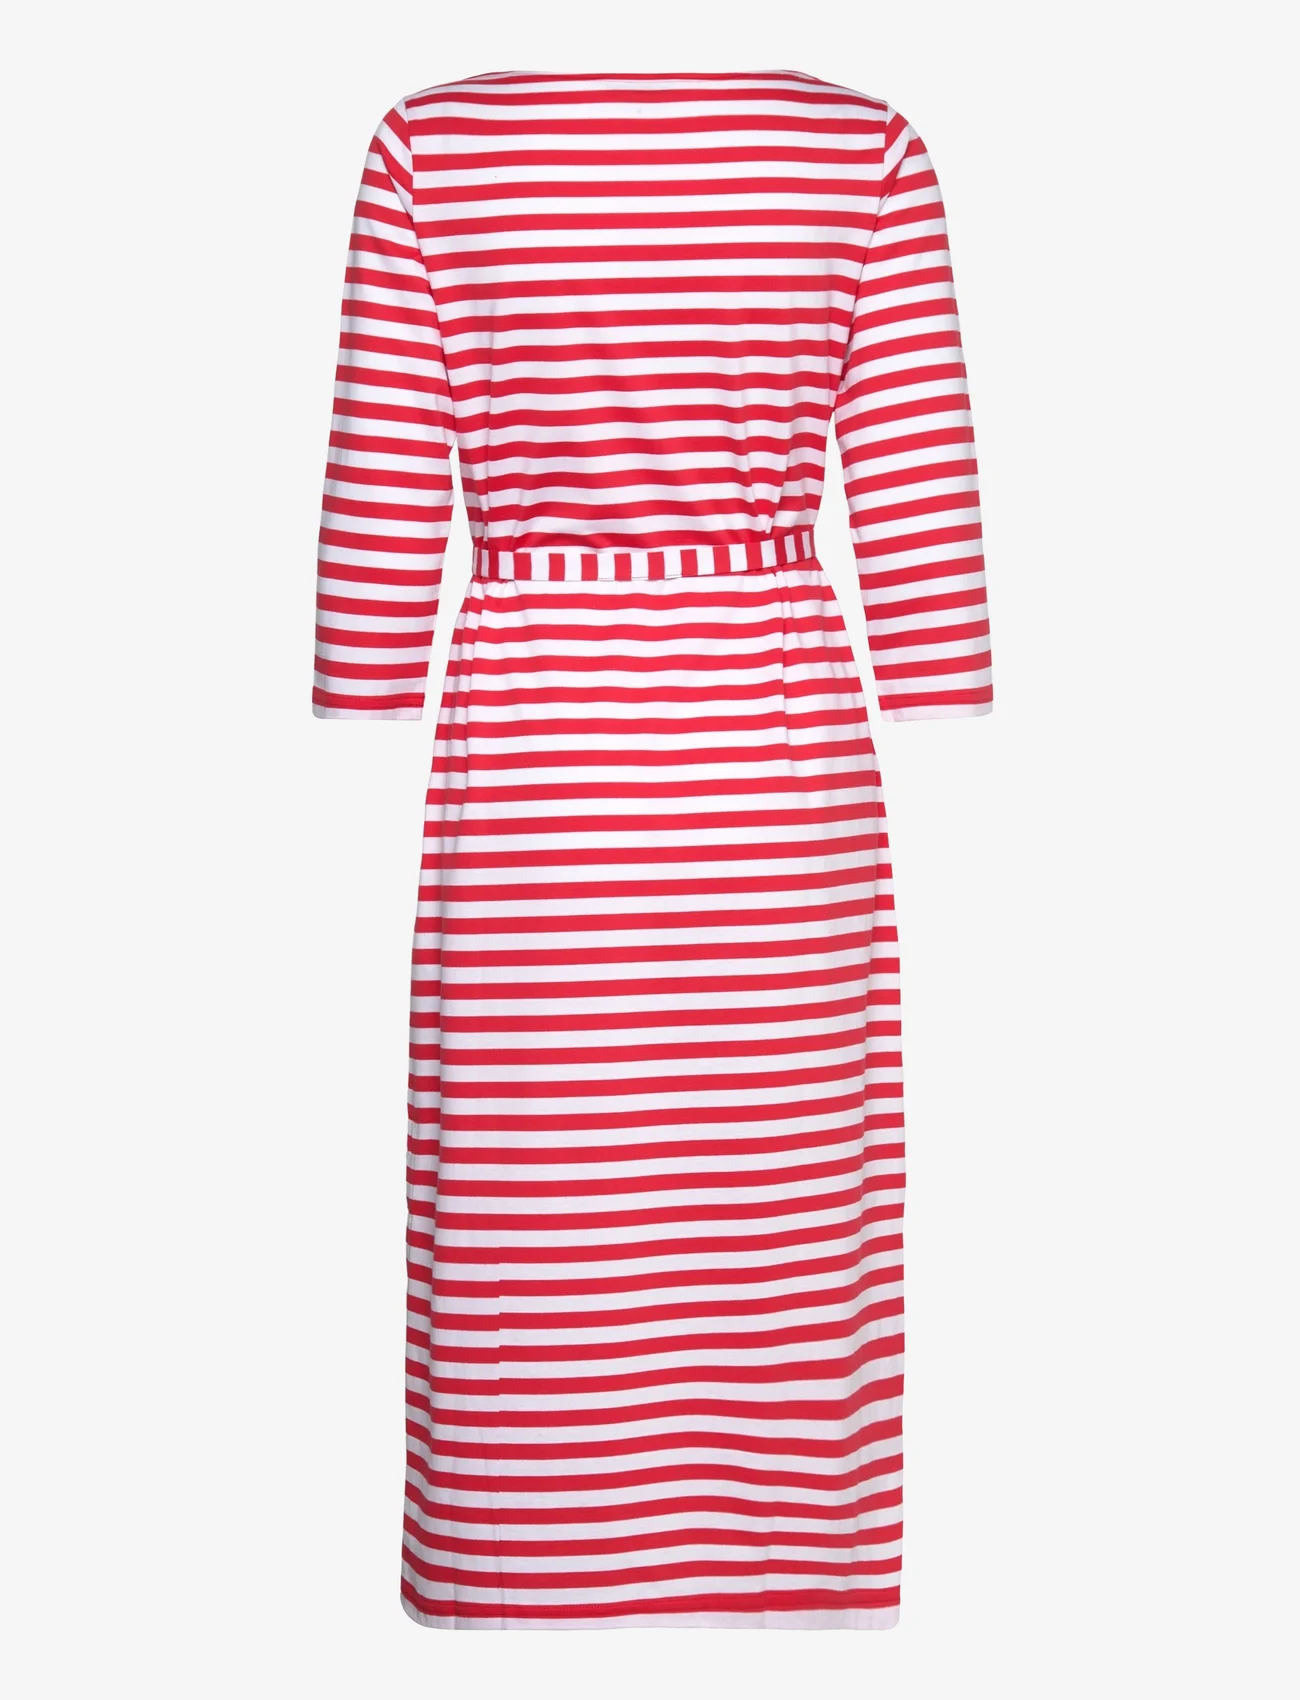 Marimekko - TASARAITA ILMA DRESS - marškinėlių tipo suknelės - red, white - 1